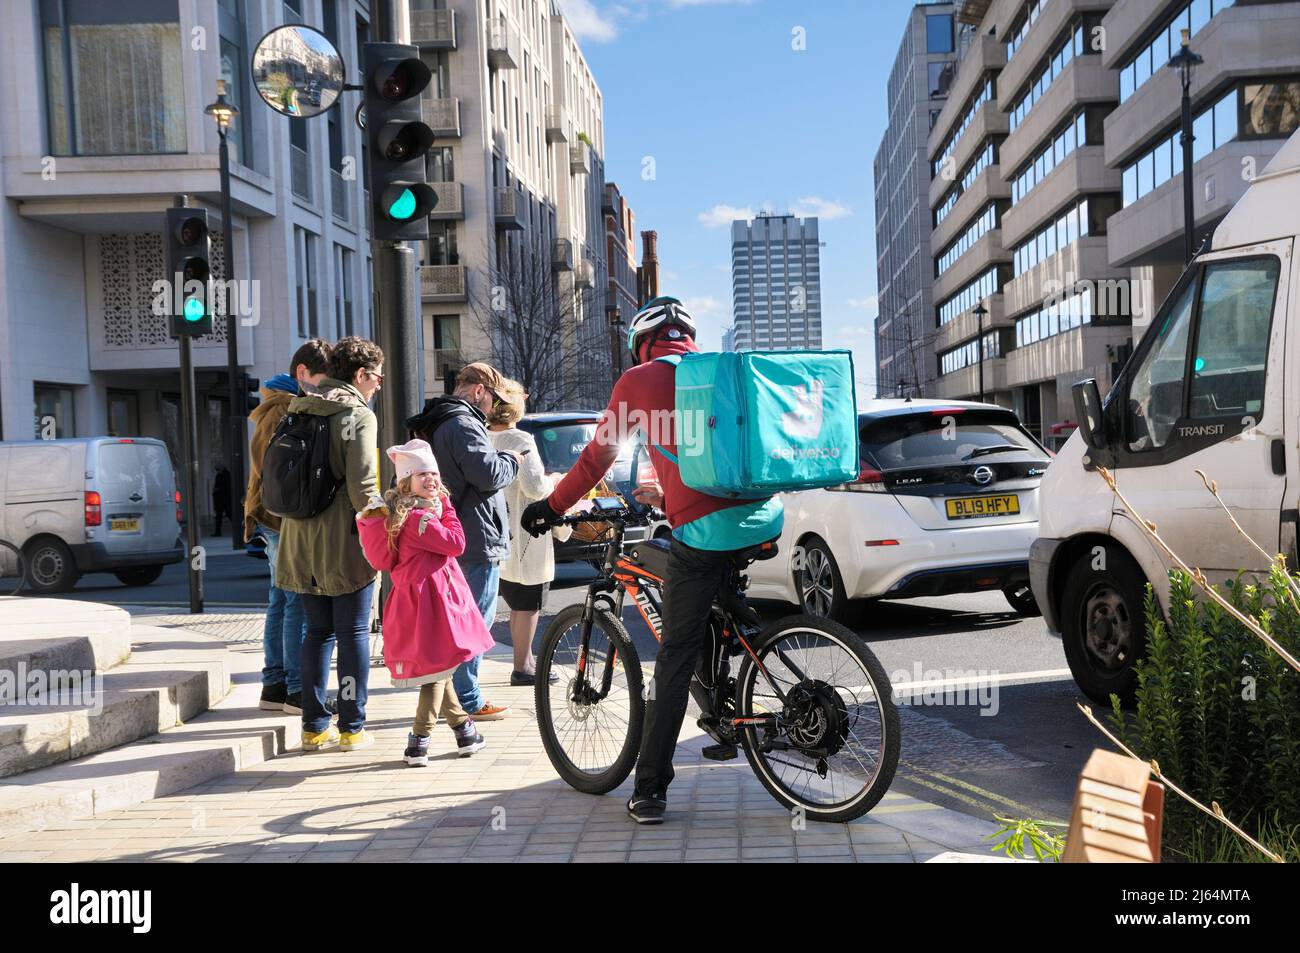 Un ciclista de mensajería de alimentos Deliveroo estacionado en su bicicleta en una calle con mochila térmica y logotipo, en el centro de Londres, Inglaterra, Reino Unido Foto de stock